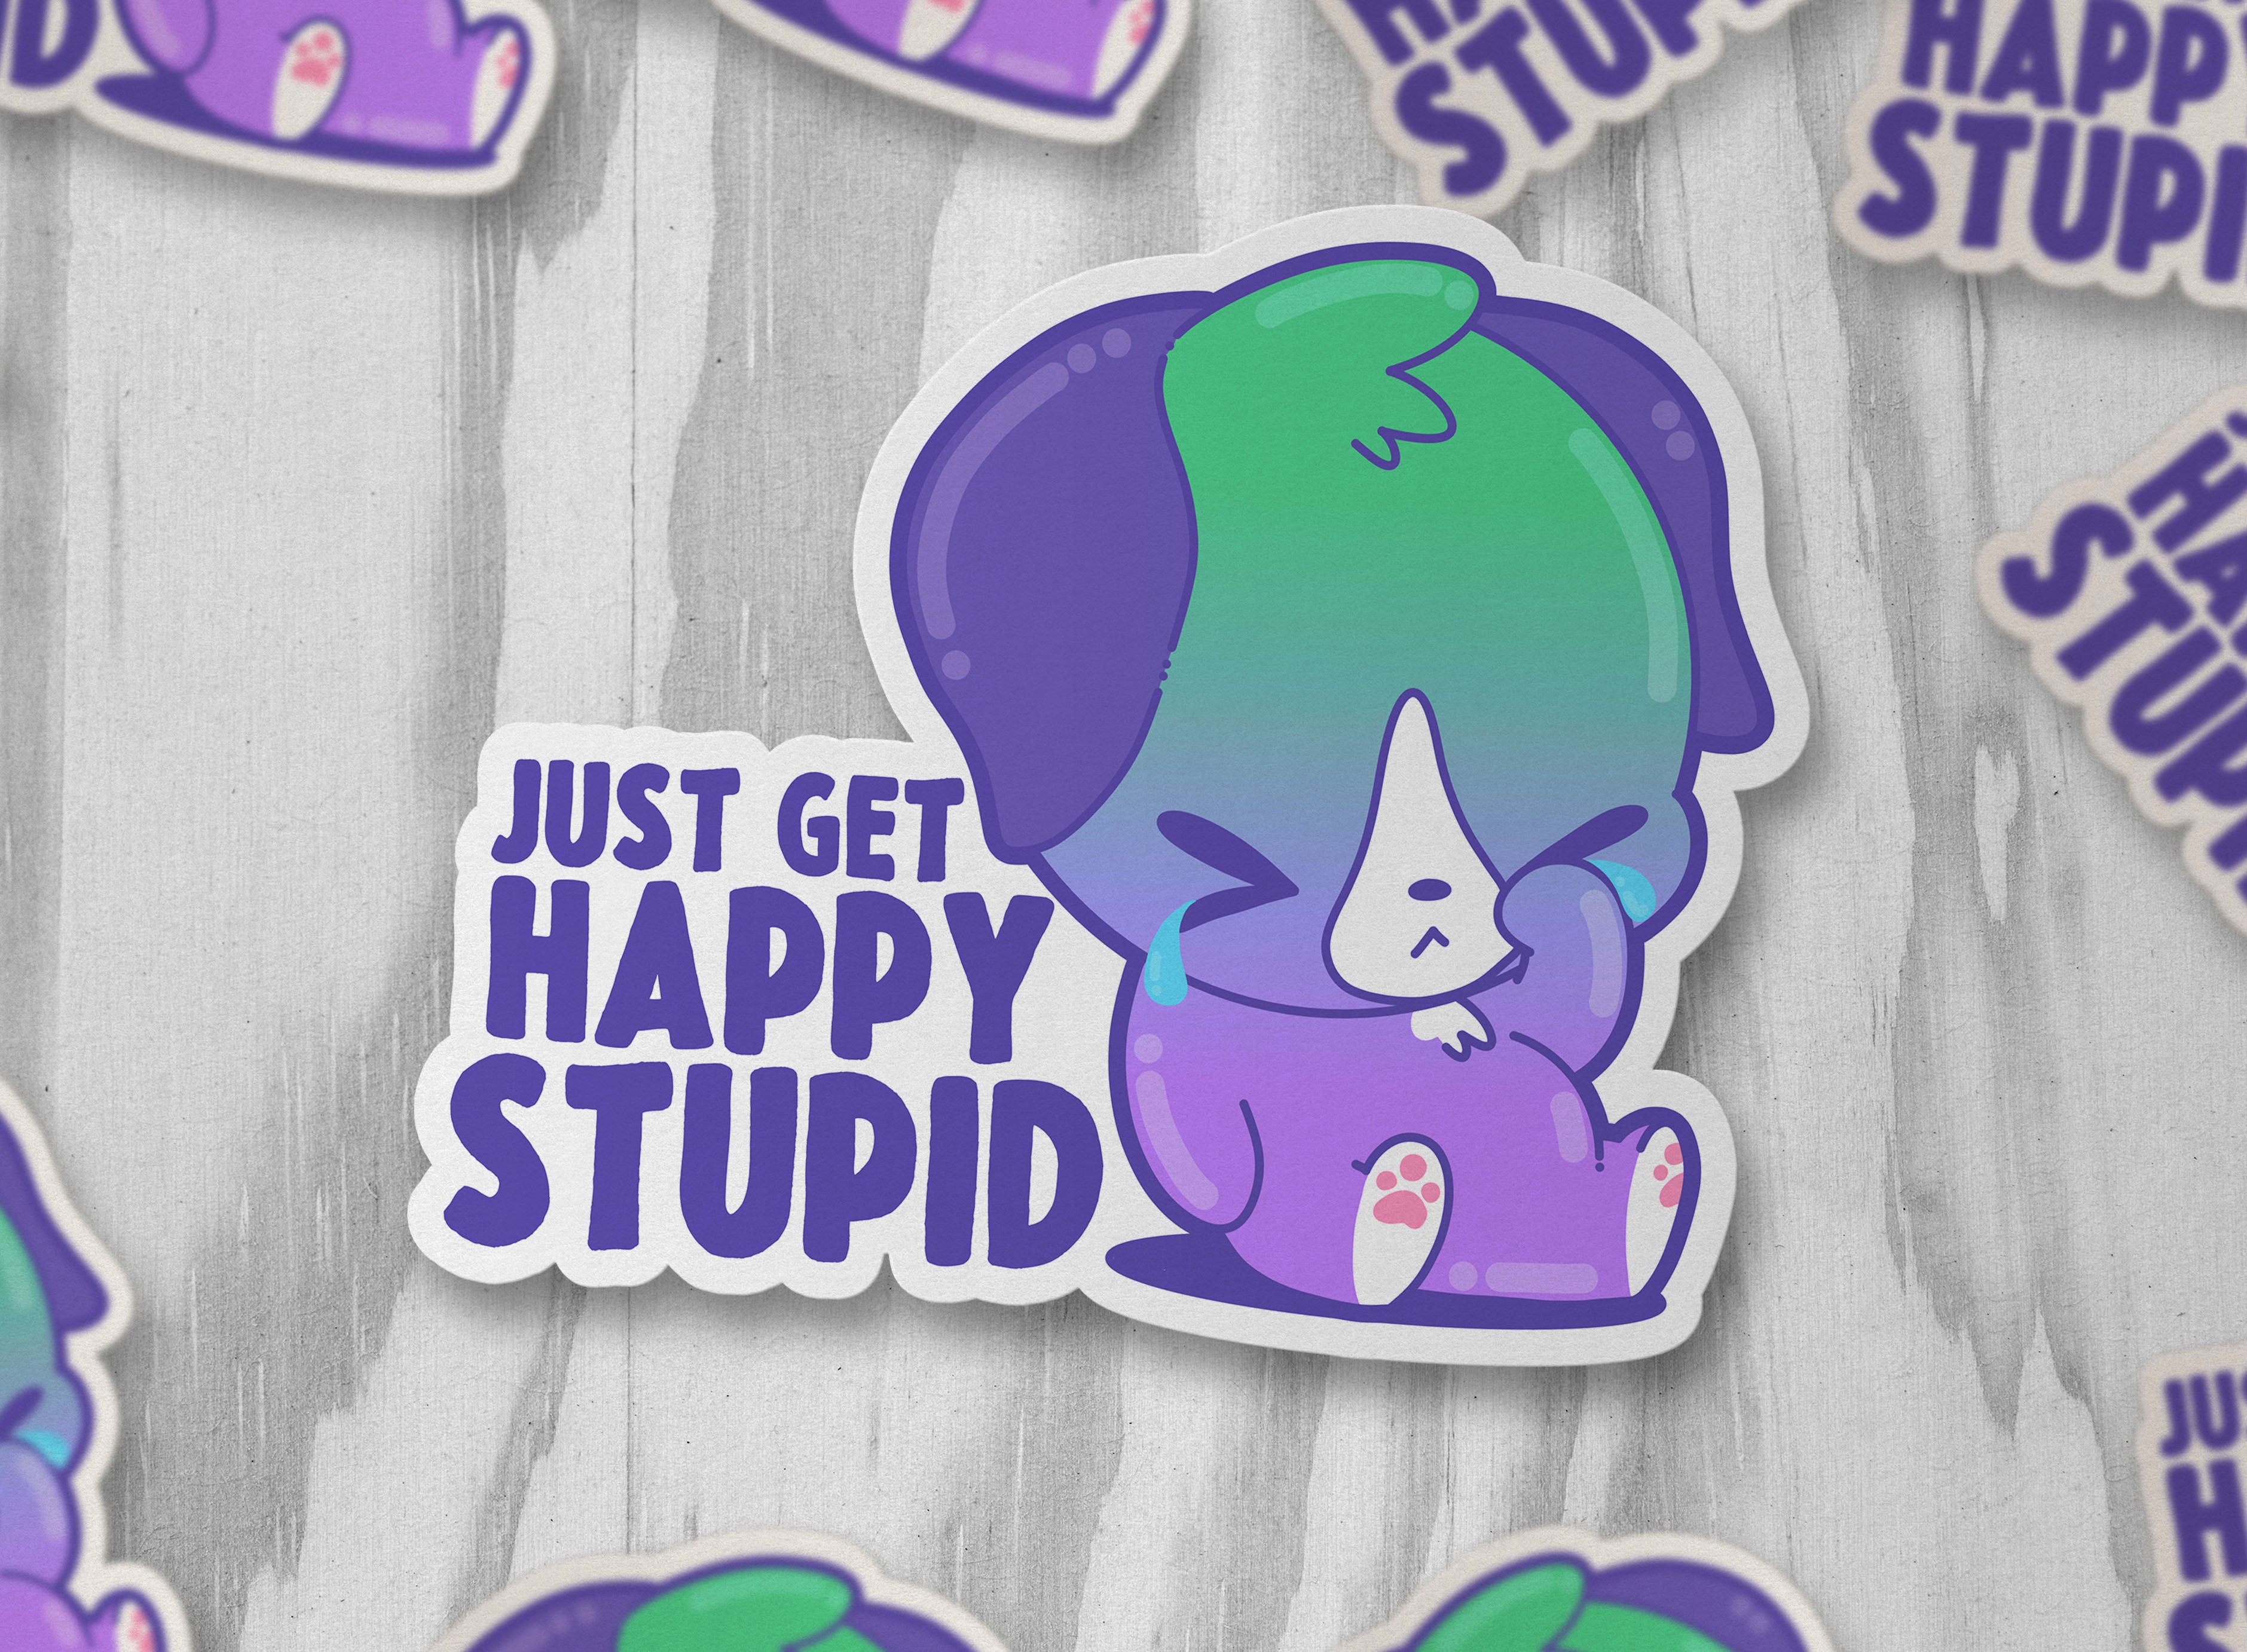 Just Get Happy Stupid - ChubbleGumLLC